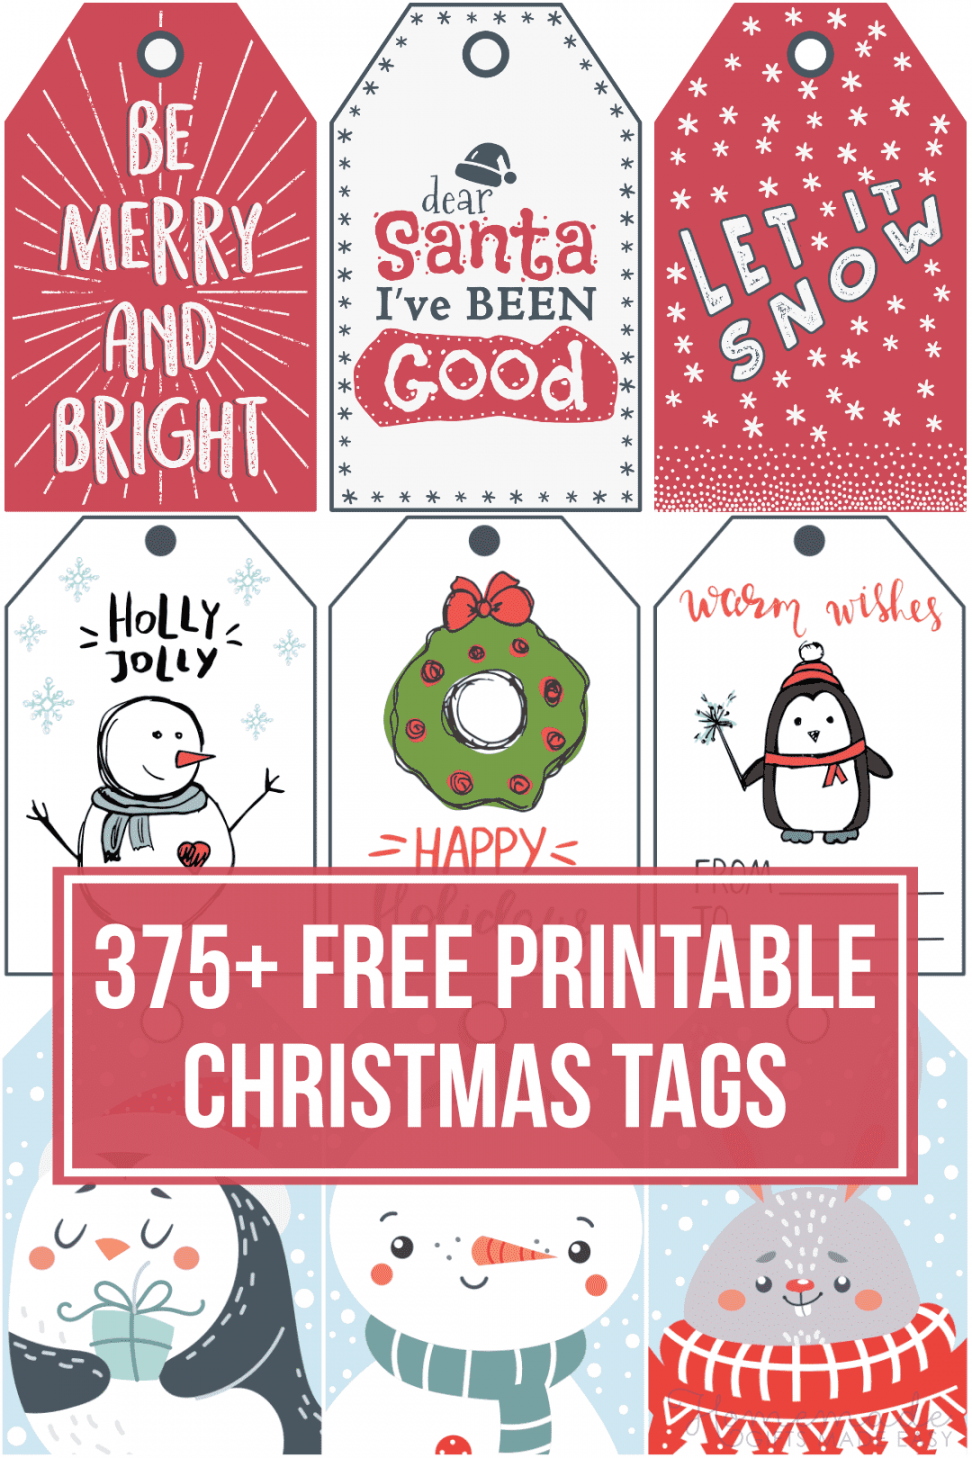 Free Gift Tags Printable - Printable - + Free Printable Christmas Tags for your Holiday Gifts